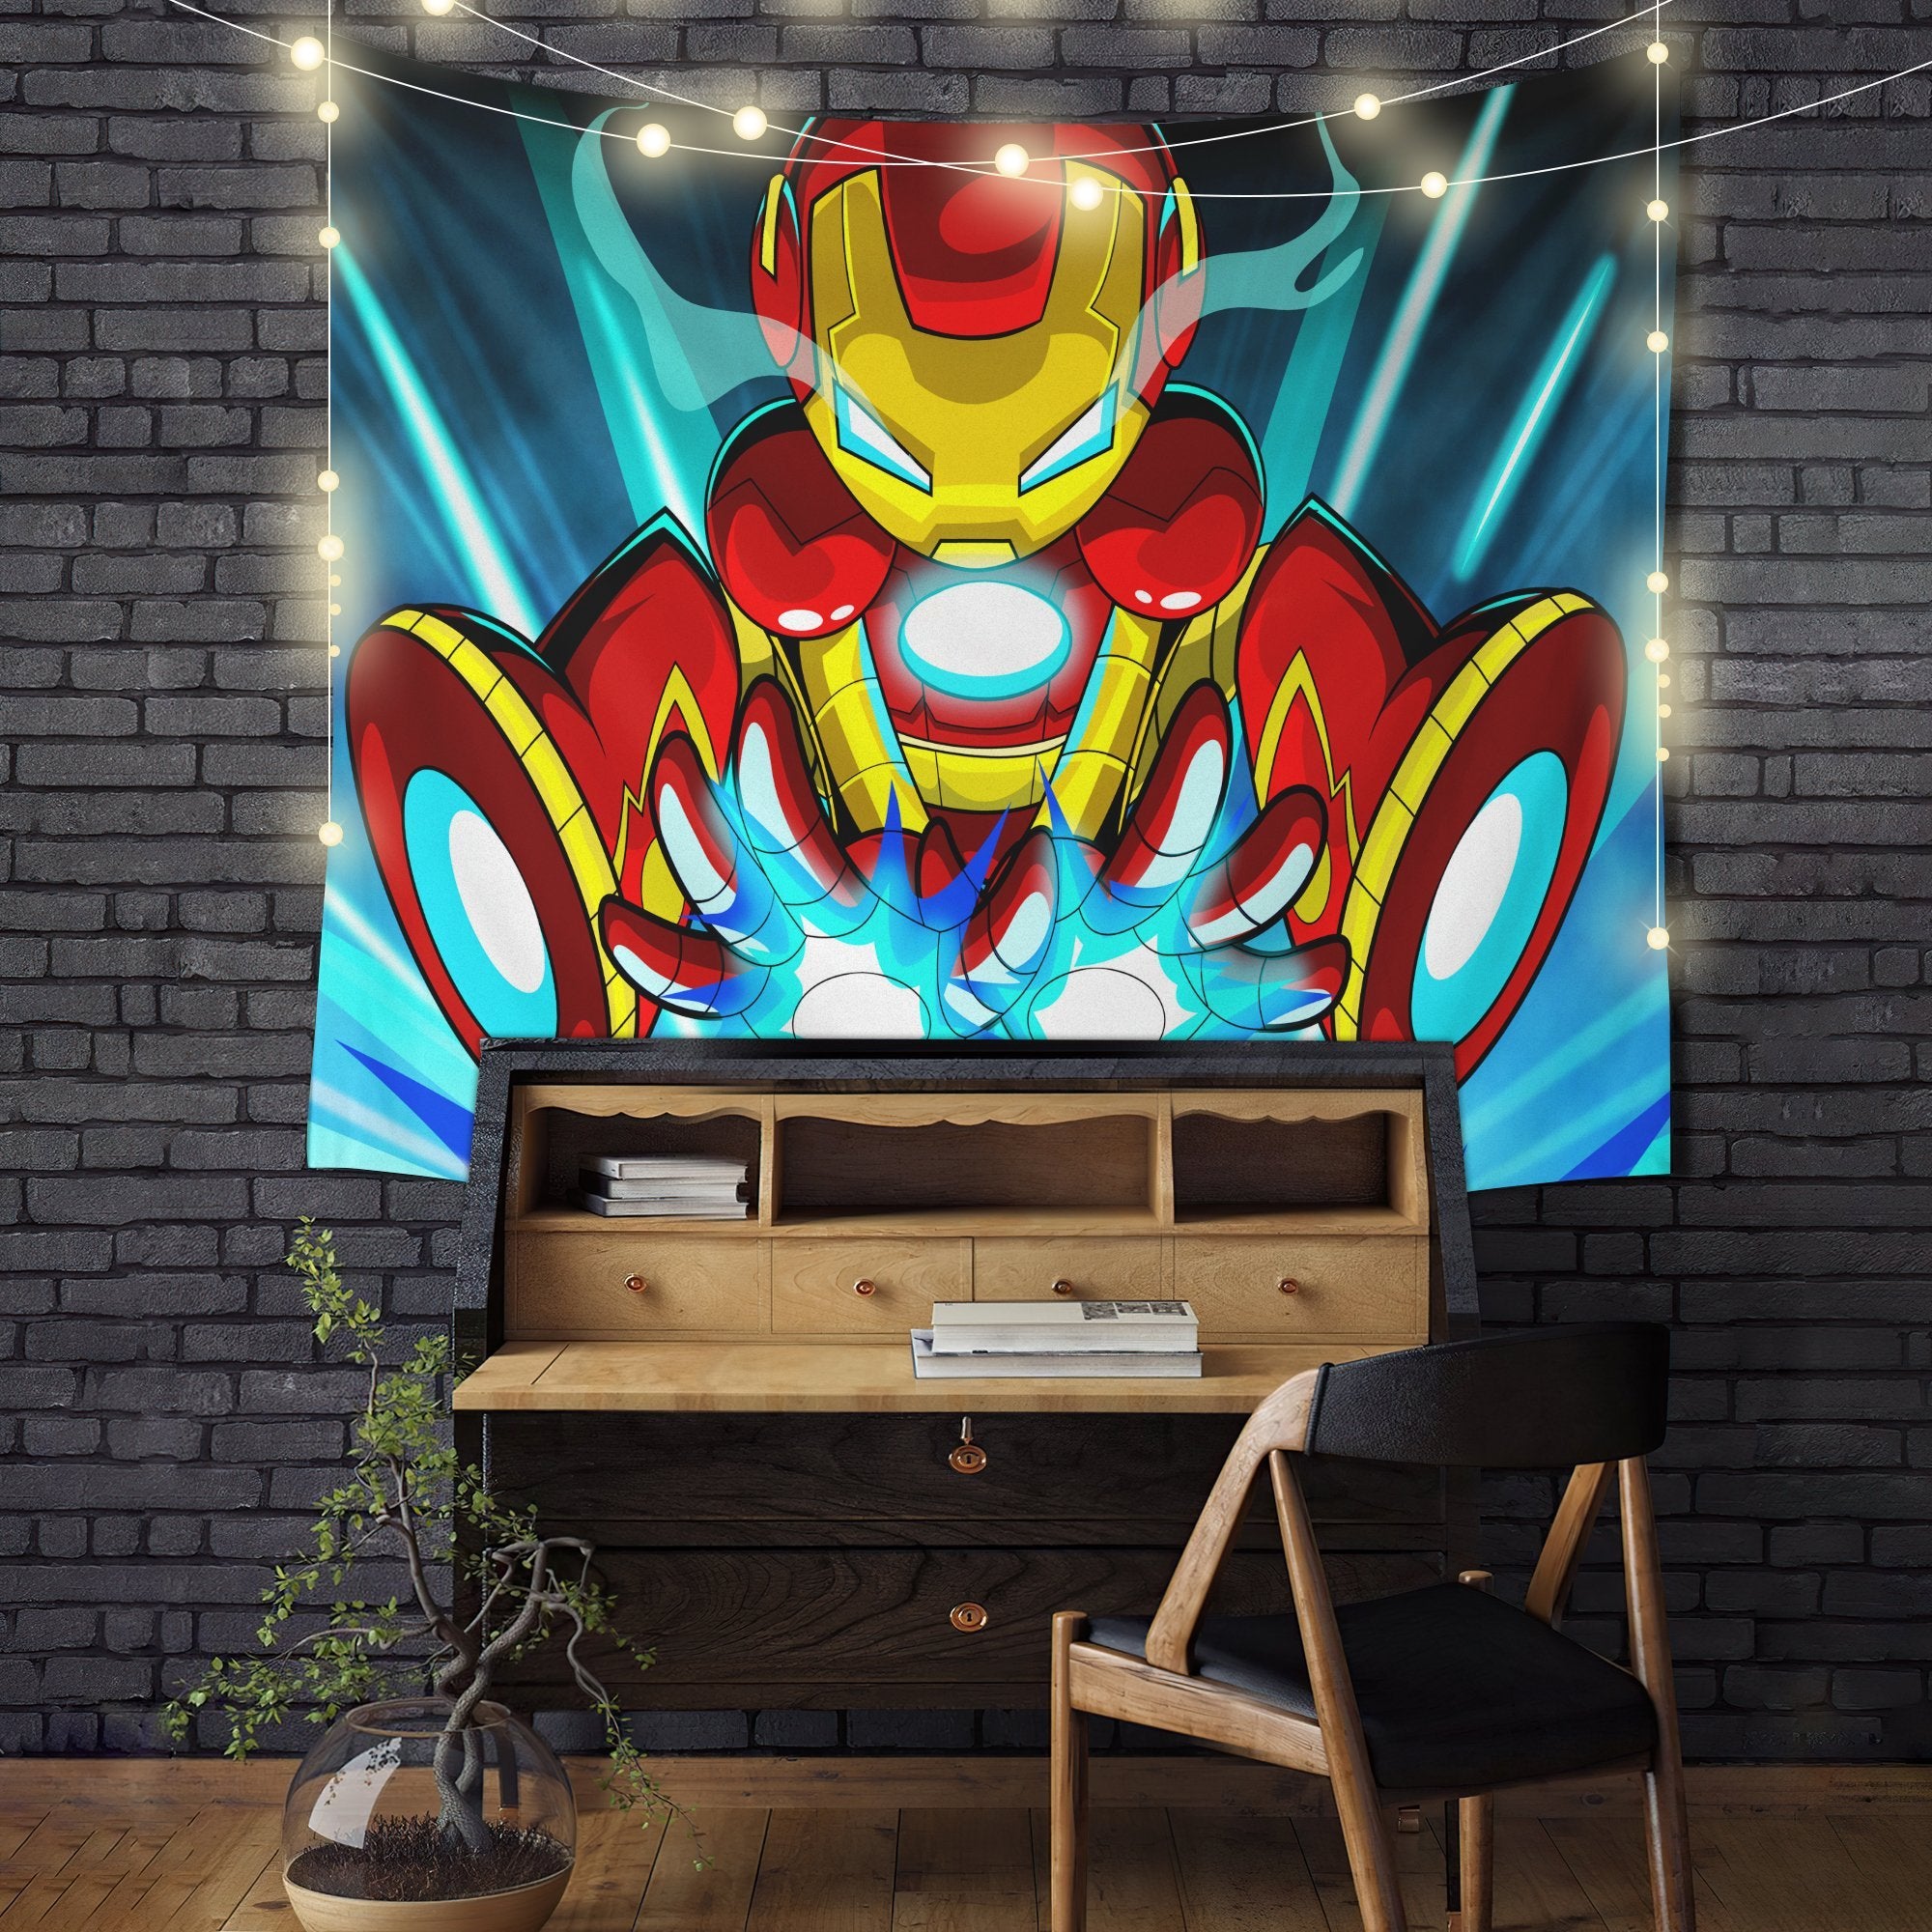 Iron Man Cartoon Digital Art Tapestry Room Decor